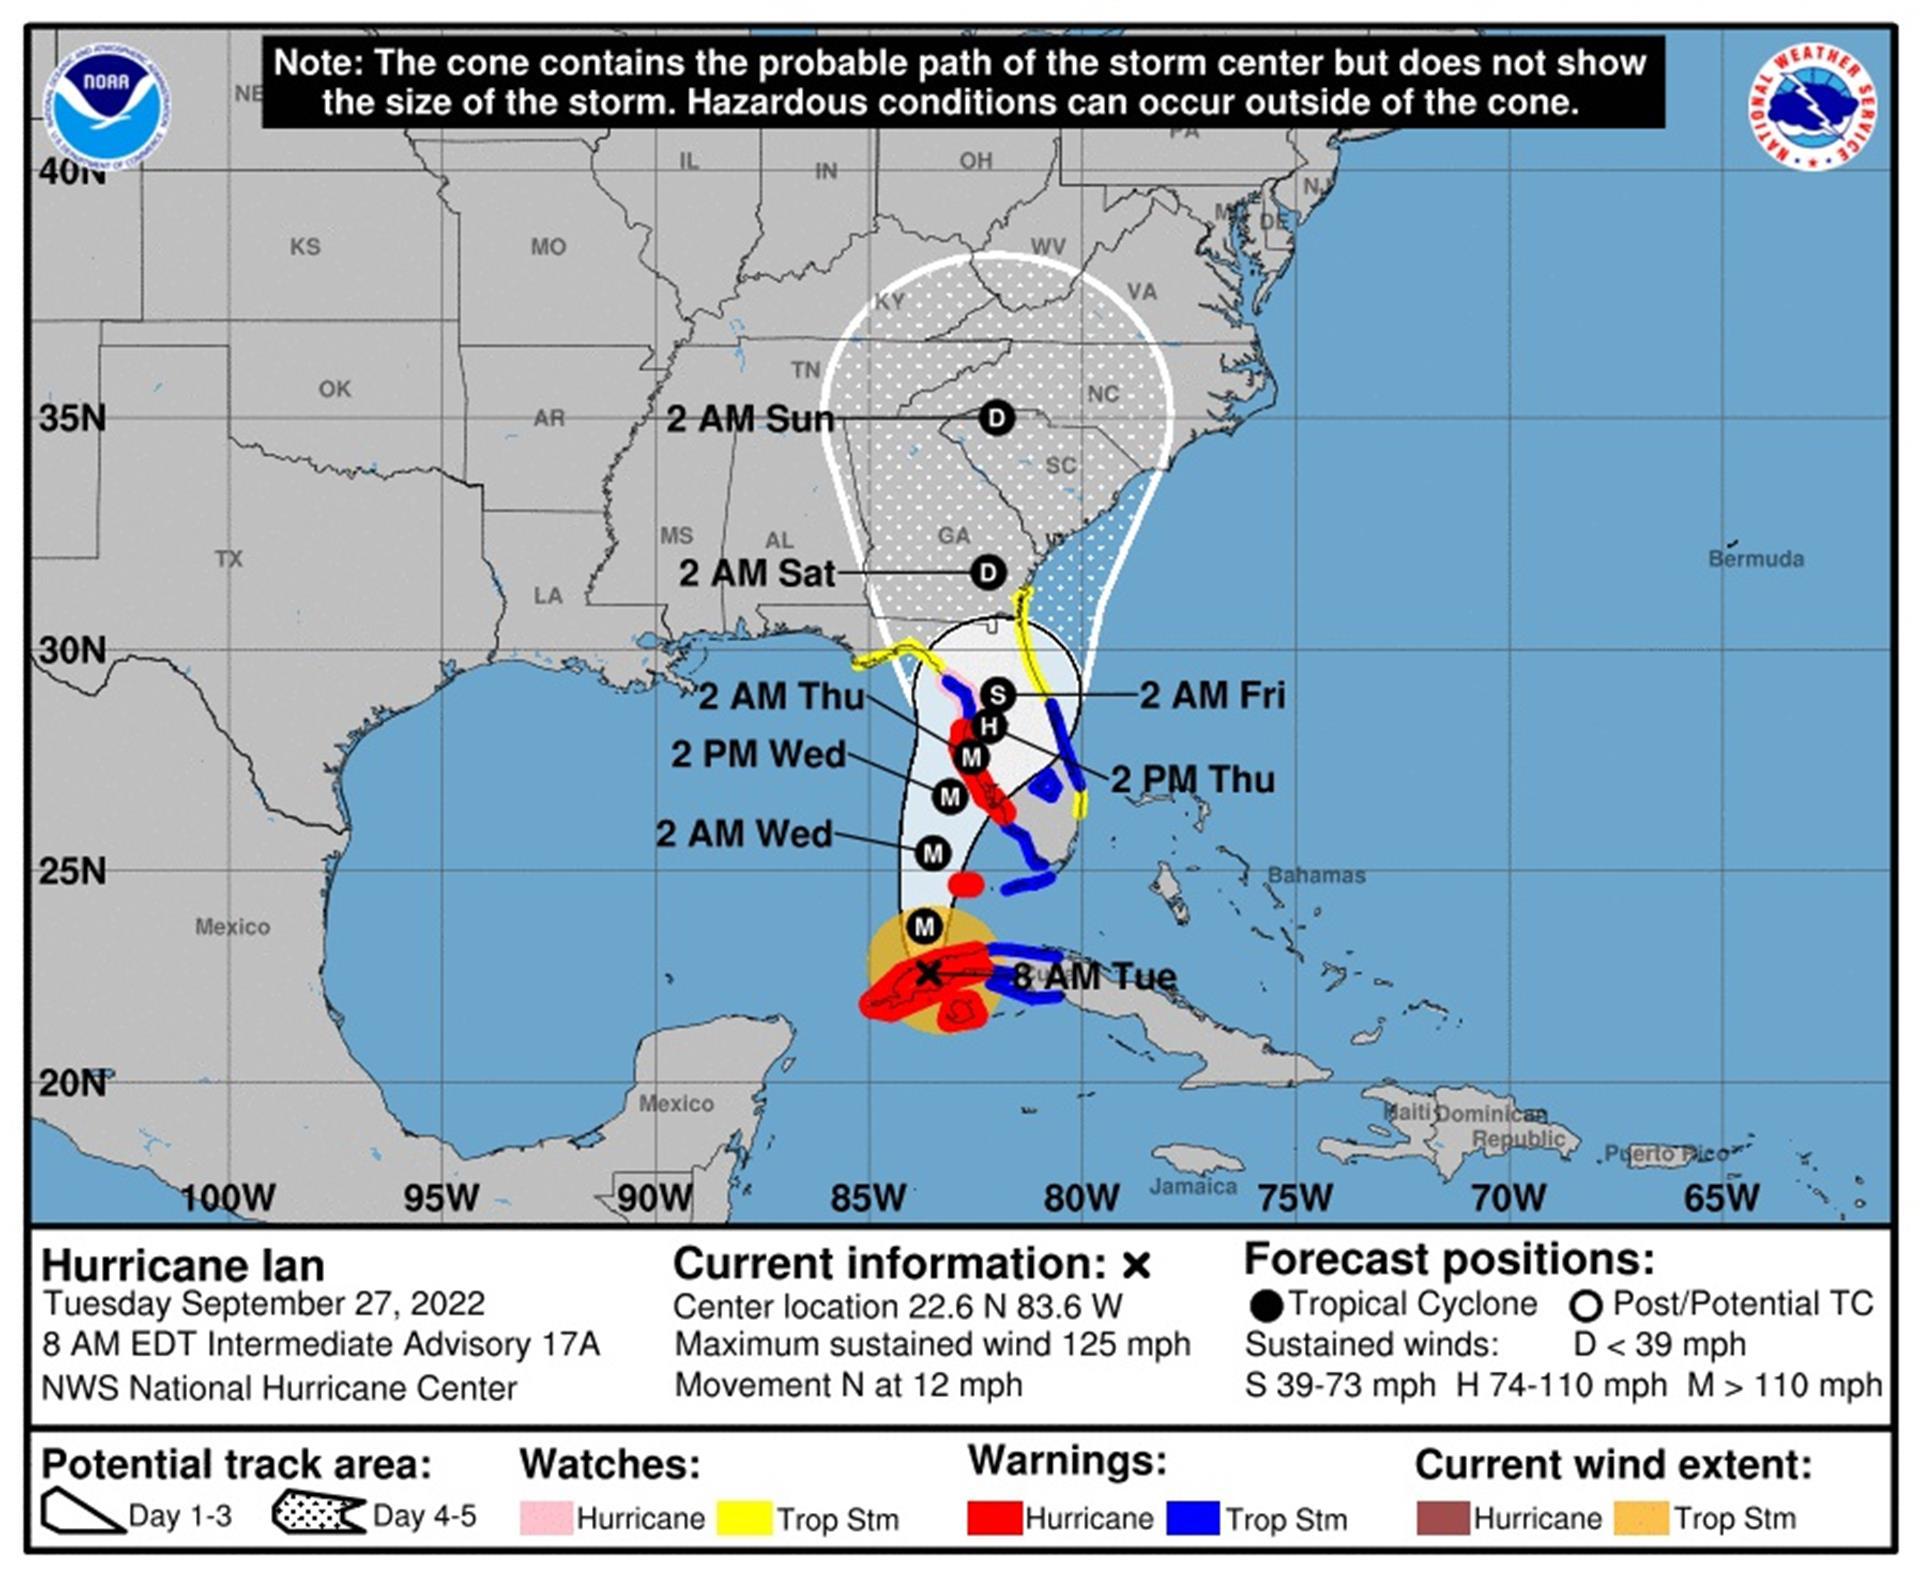 Imagen de la Oficina Nacional de Administración Oceánica y Atmosférica de Estados Unidos (NOAA), a través del Centro Nacional de Huracanes (NHC), en la que se registra el pronóstico de cinco días del paso del huracán Ian por el Caribe hacia las costas de Estados Unidos.